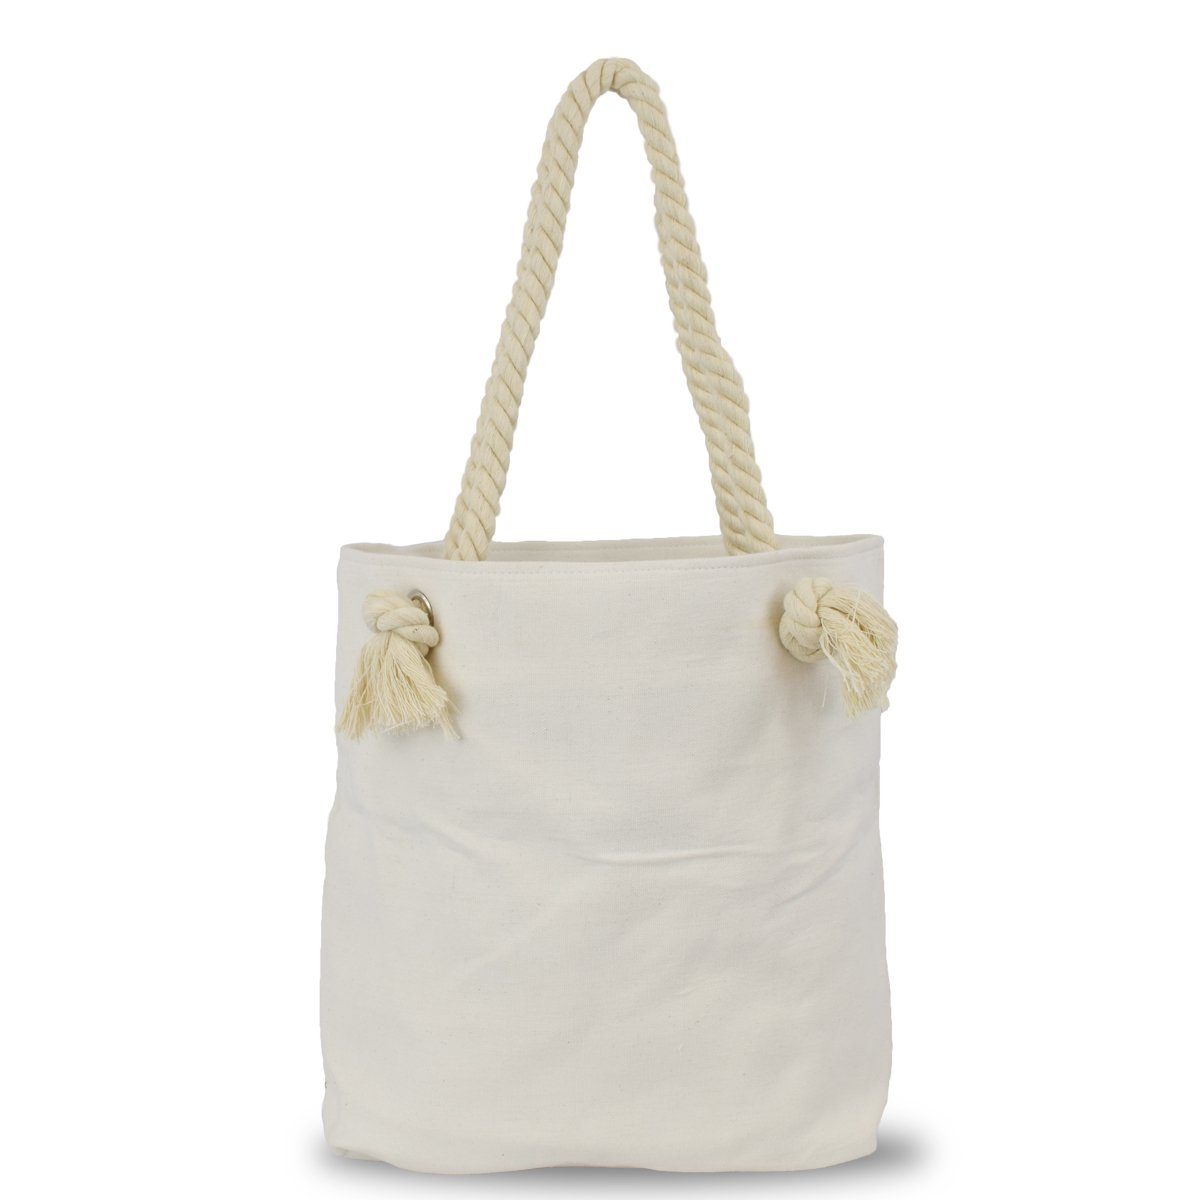 Sonia Originelli Umhängetasche Innentasche Reißverschluss City Einkaufstasche Bag, kleine "MOIN" Shopper Tasche mit grau-rosa